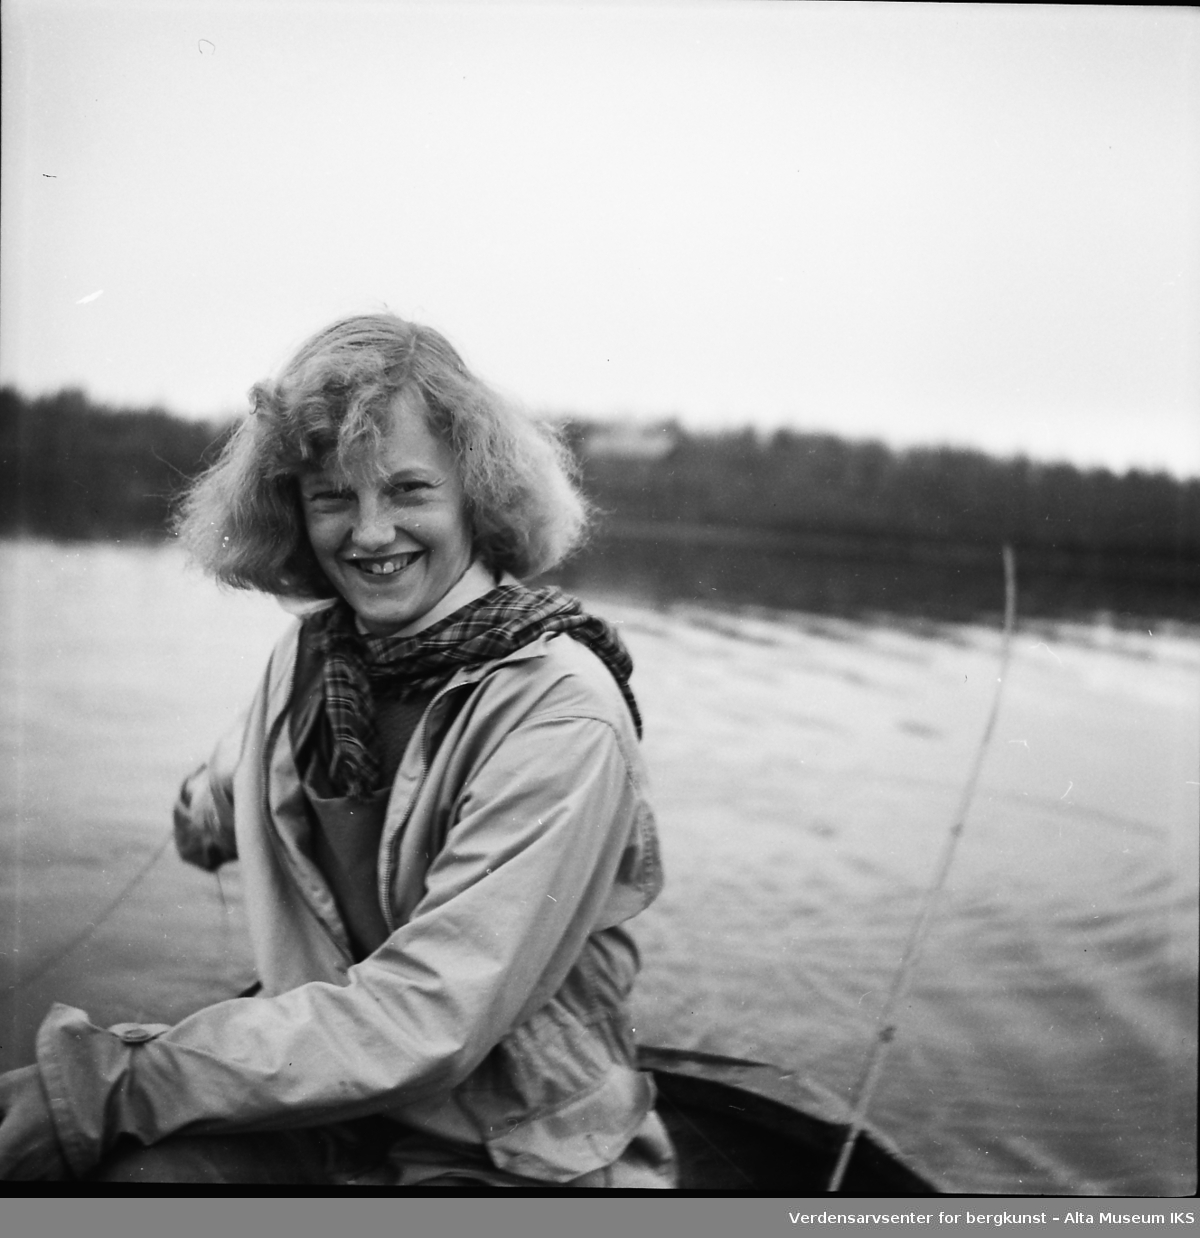 En ung kvinne sitter i en båt midt på et vann, og smiler lurt til kameraet.